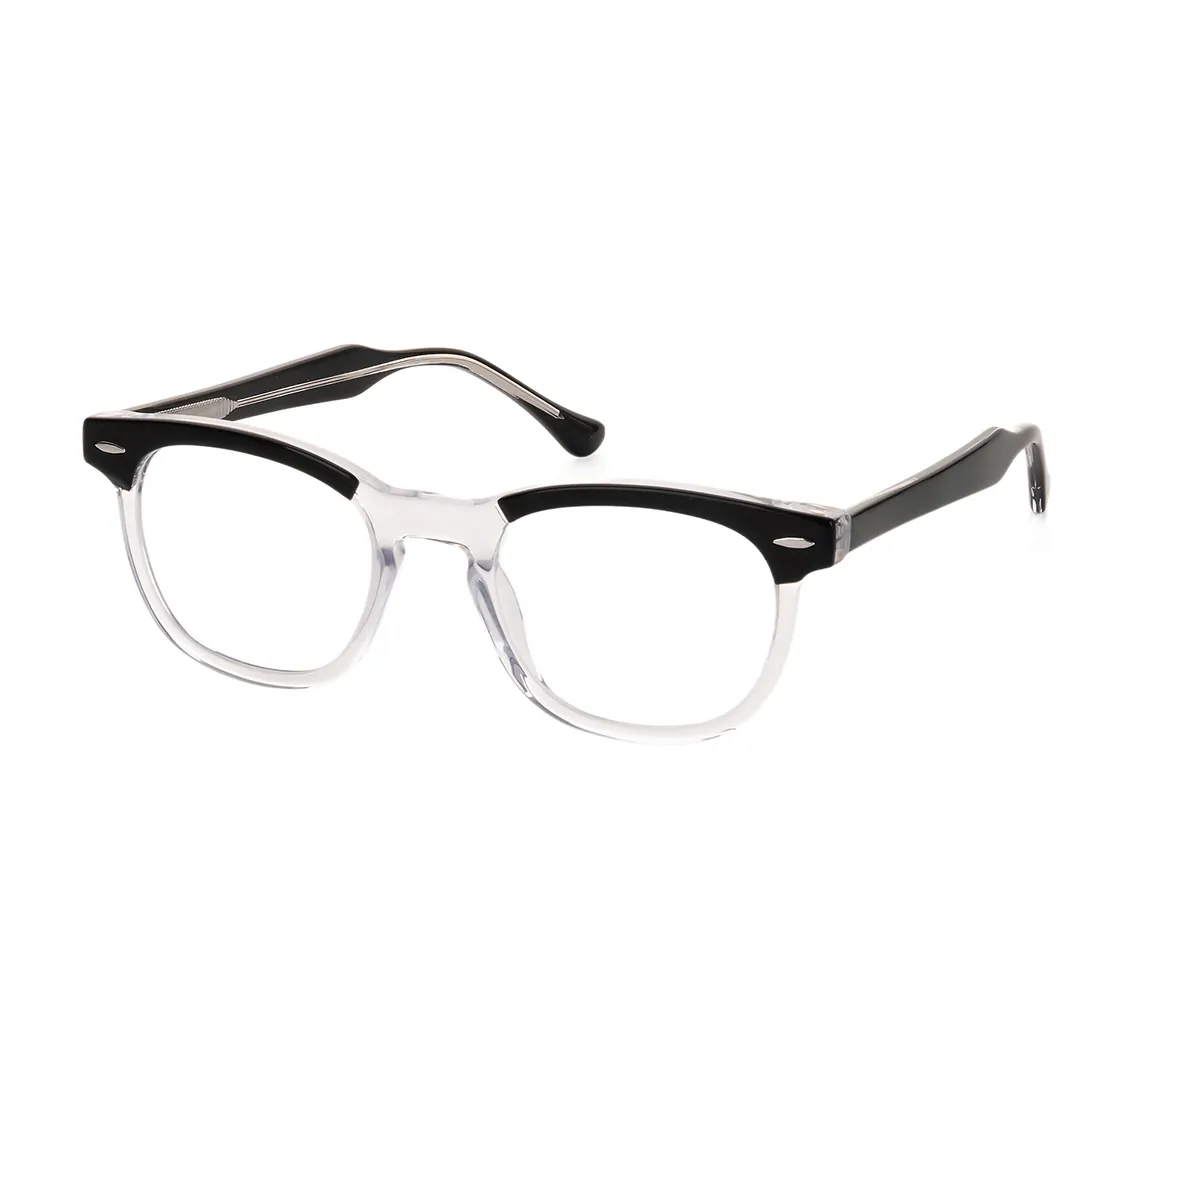 Linga - Square Black-Transparent Glasses for Men & Women